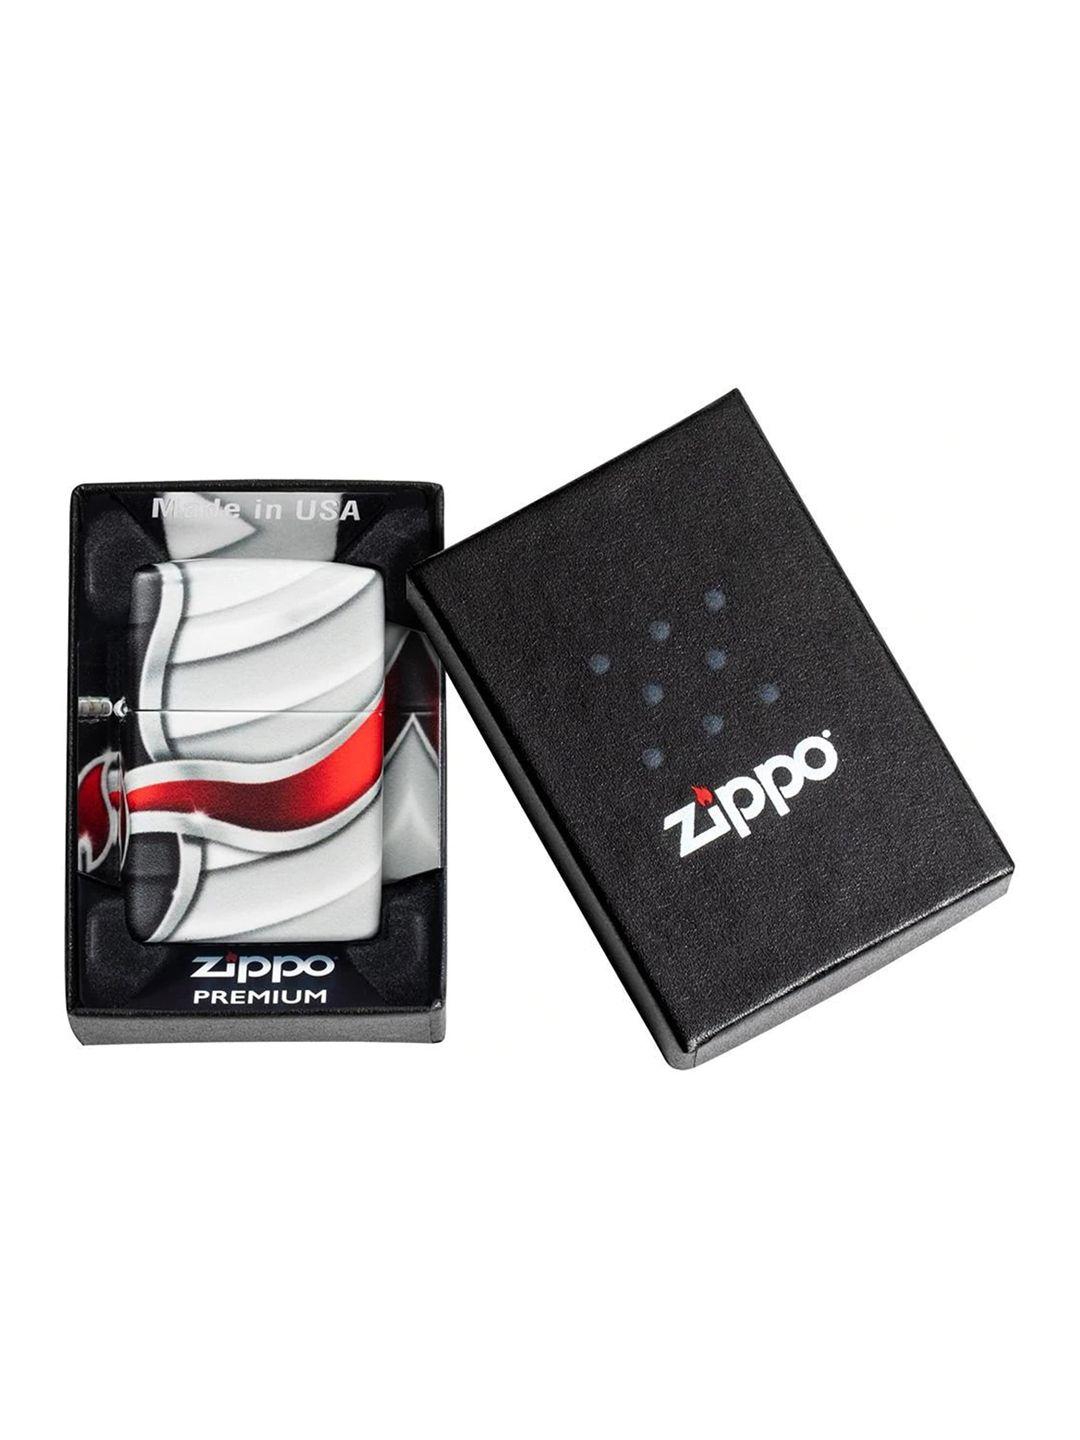 zippo unisex white & red printed pocket lighter